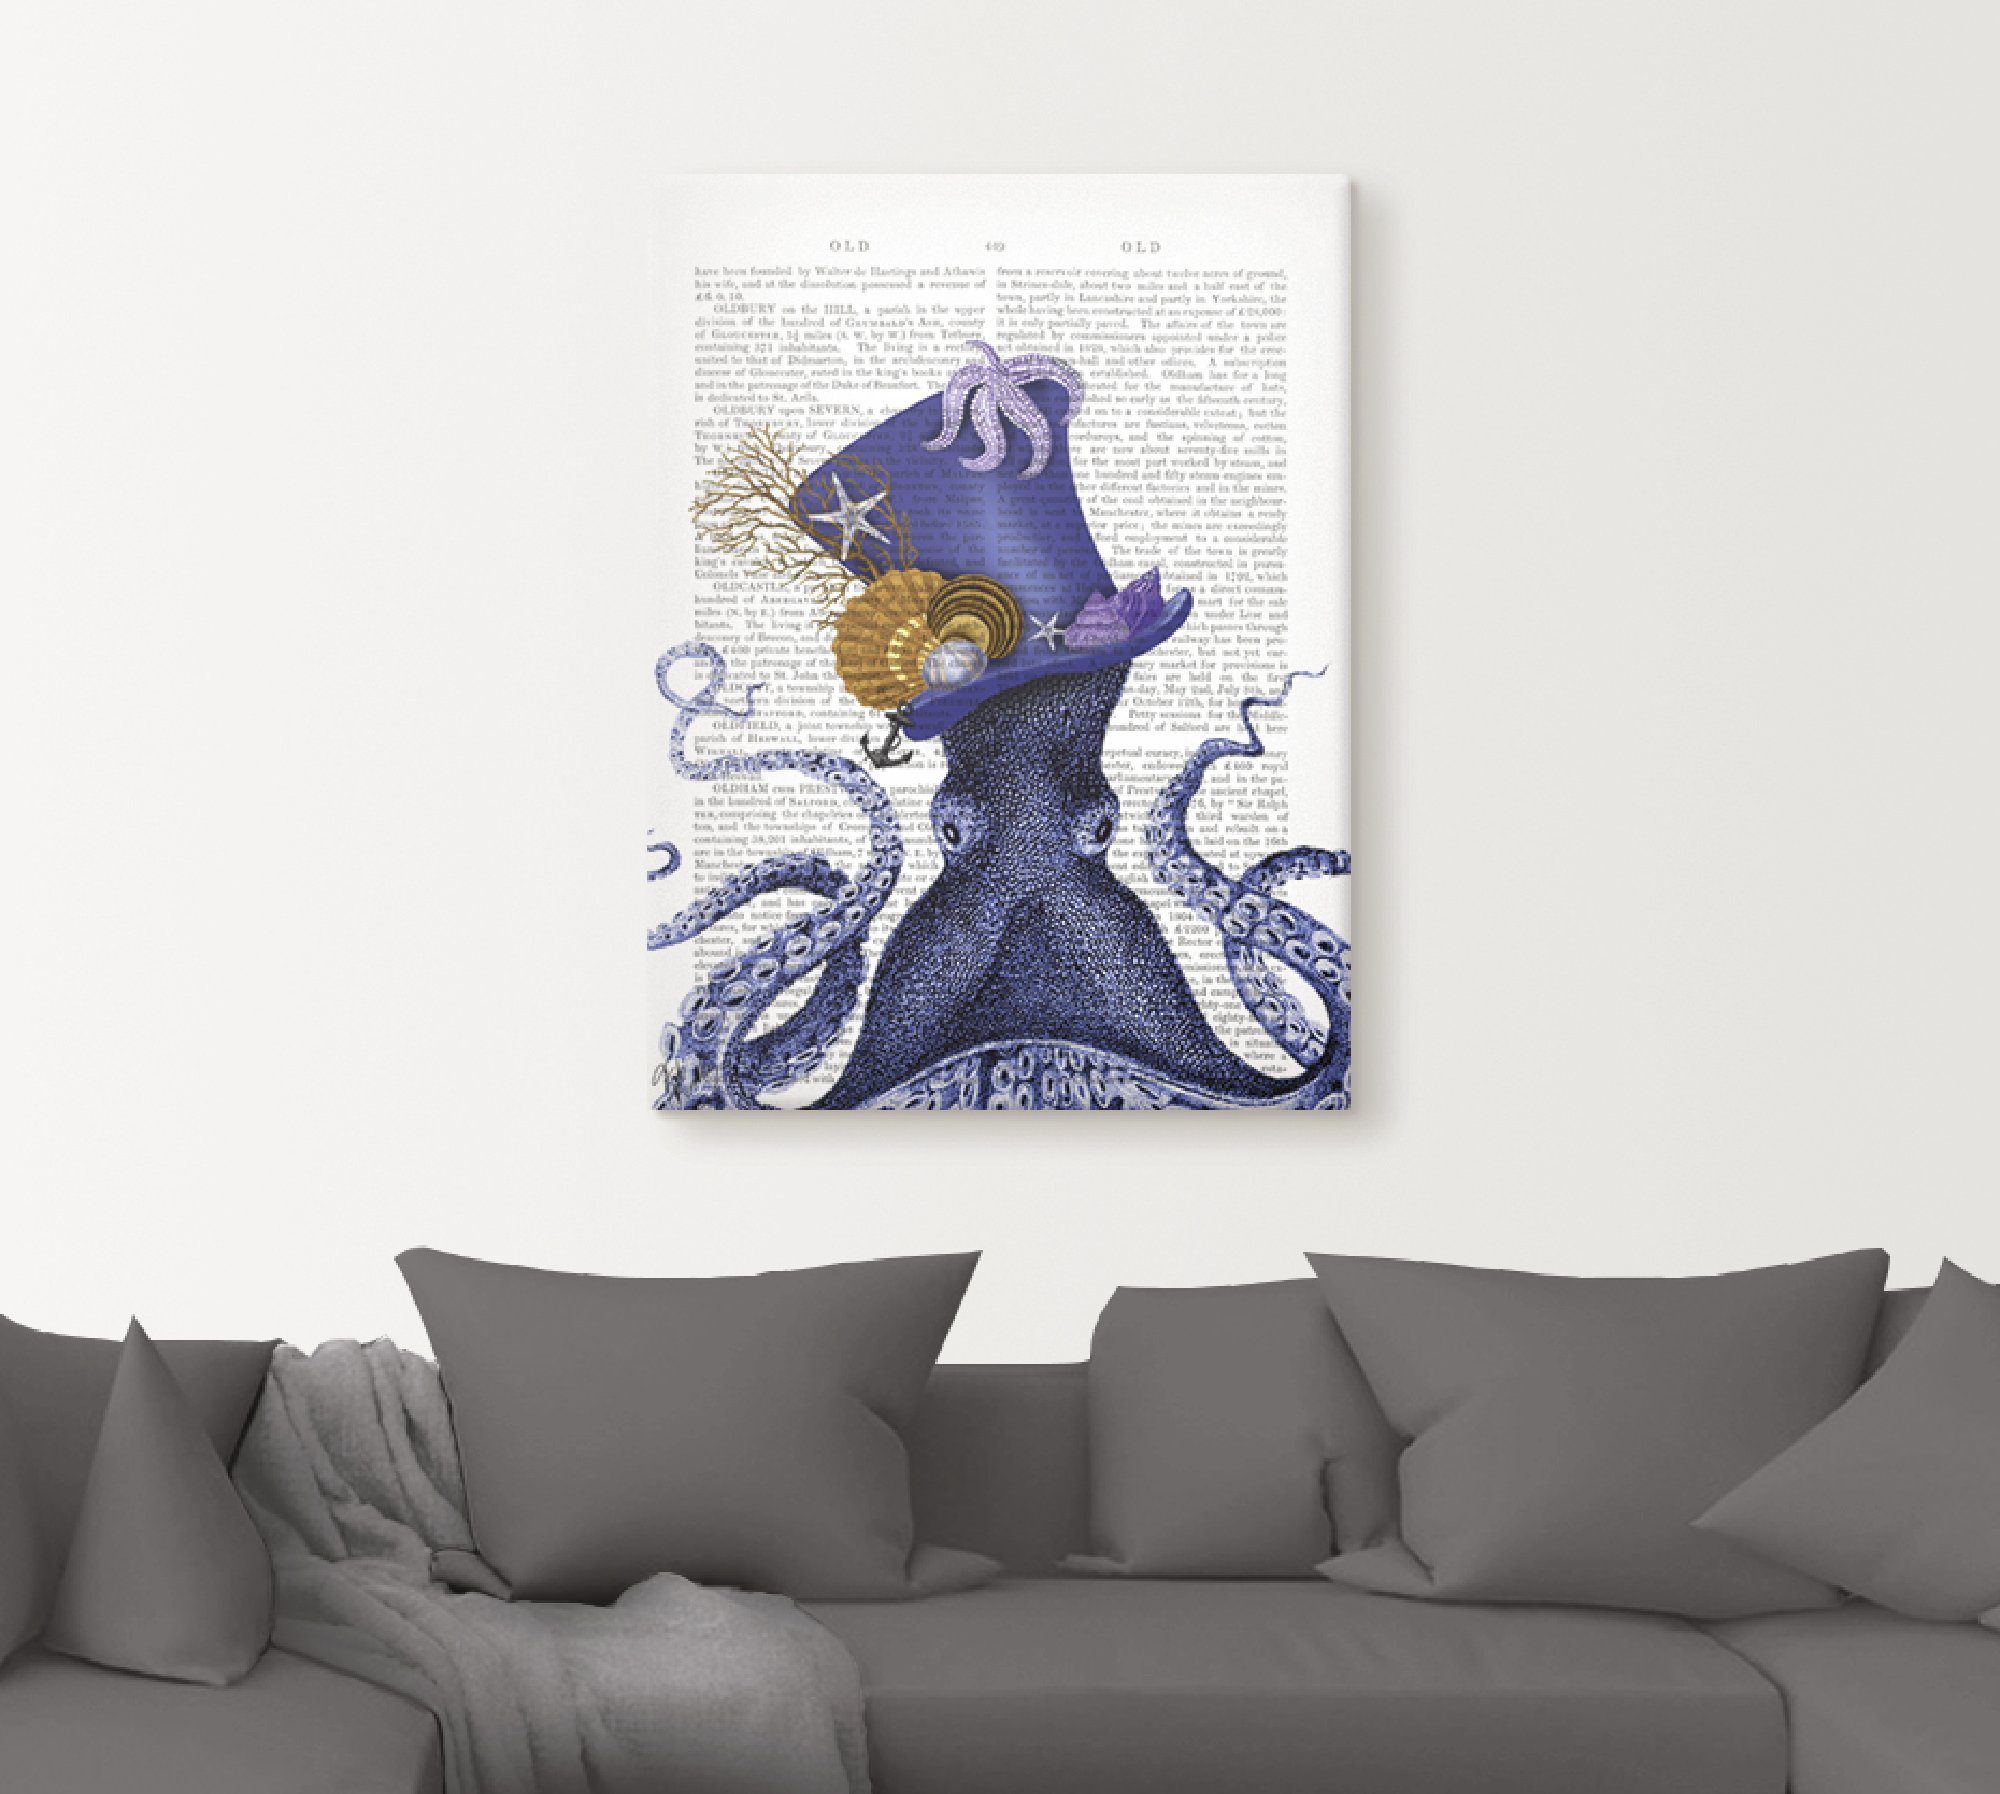 Artland Artprint Octopus met hoed in vele afmetingen & productsoorten - artprint van aluminium / artprint voor buiten, artprint op linnen, poster, muursticker / wandfolie ook gesch